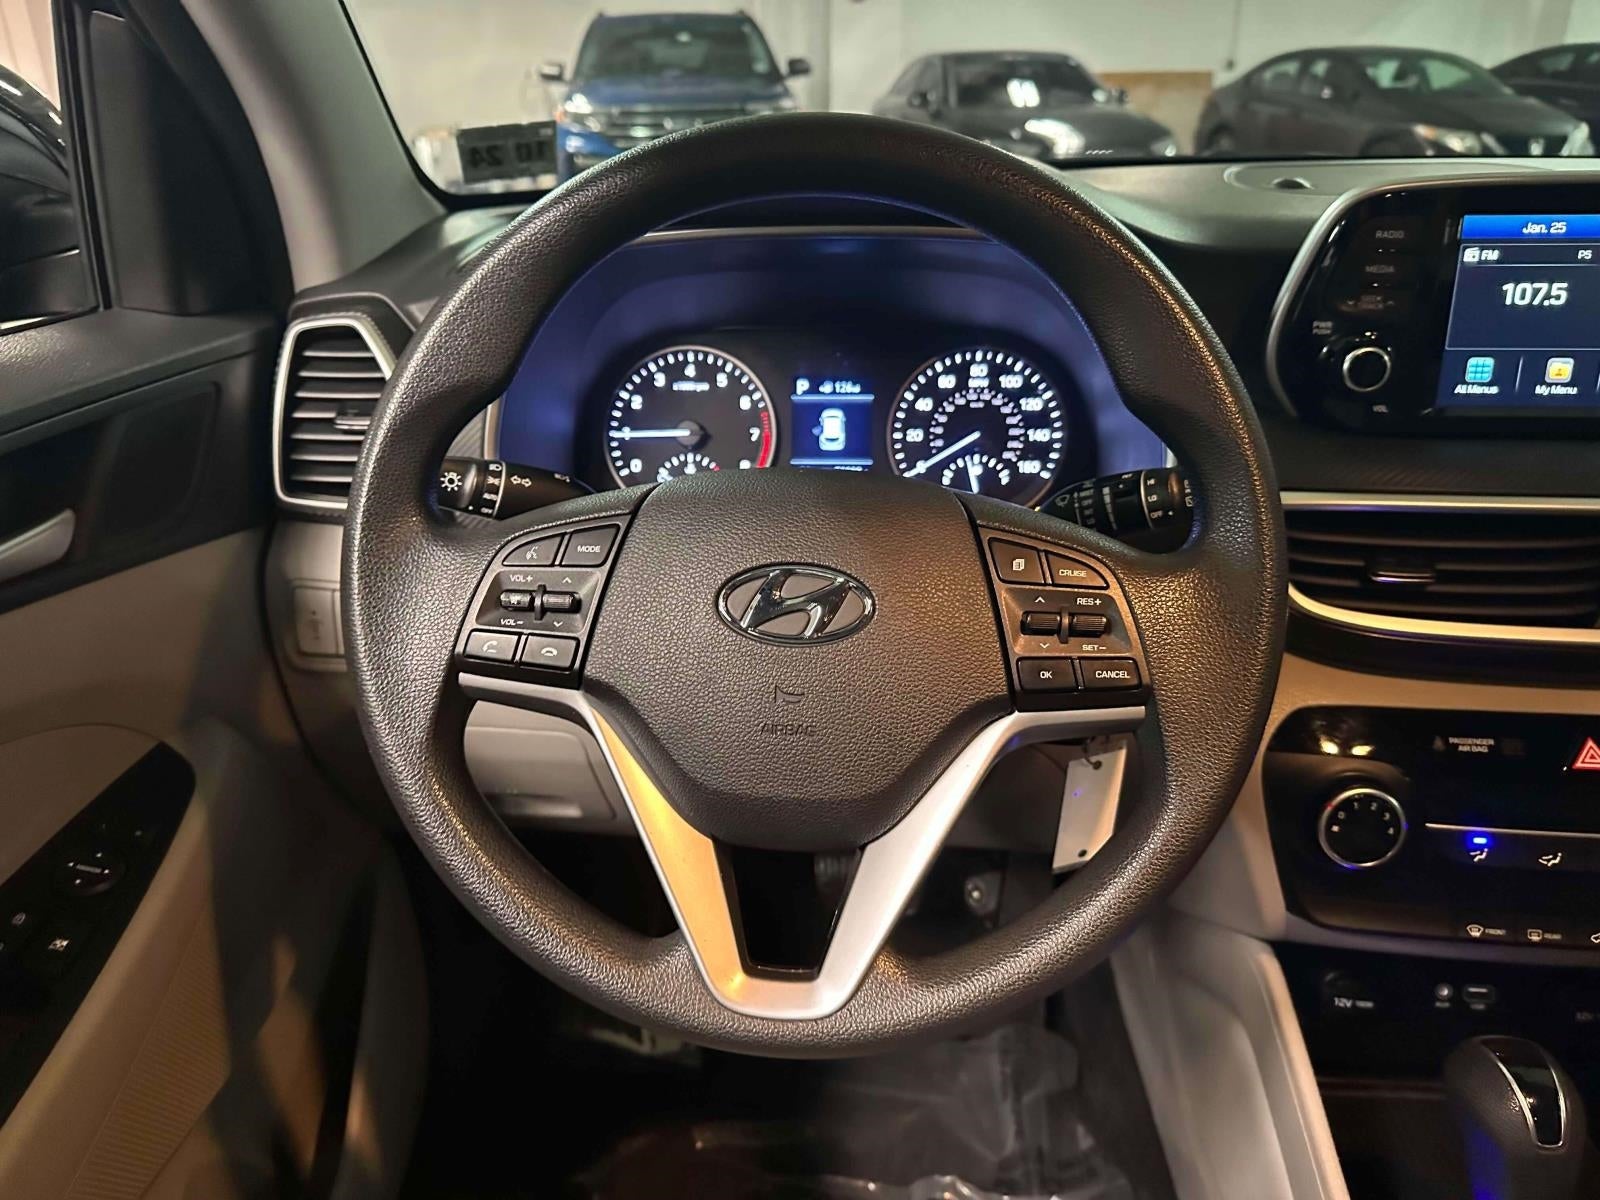 2019 Hyundai Tucson SE AWD